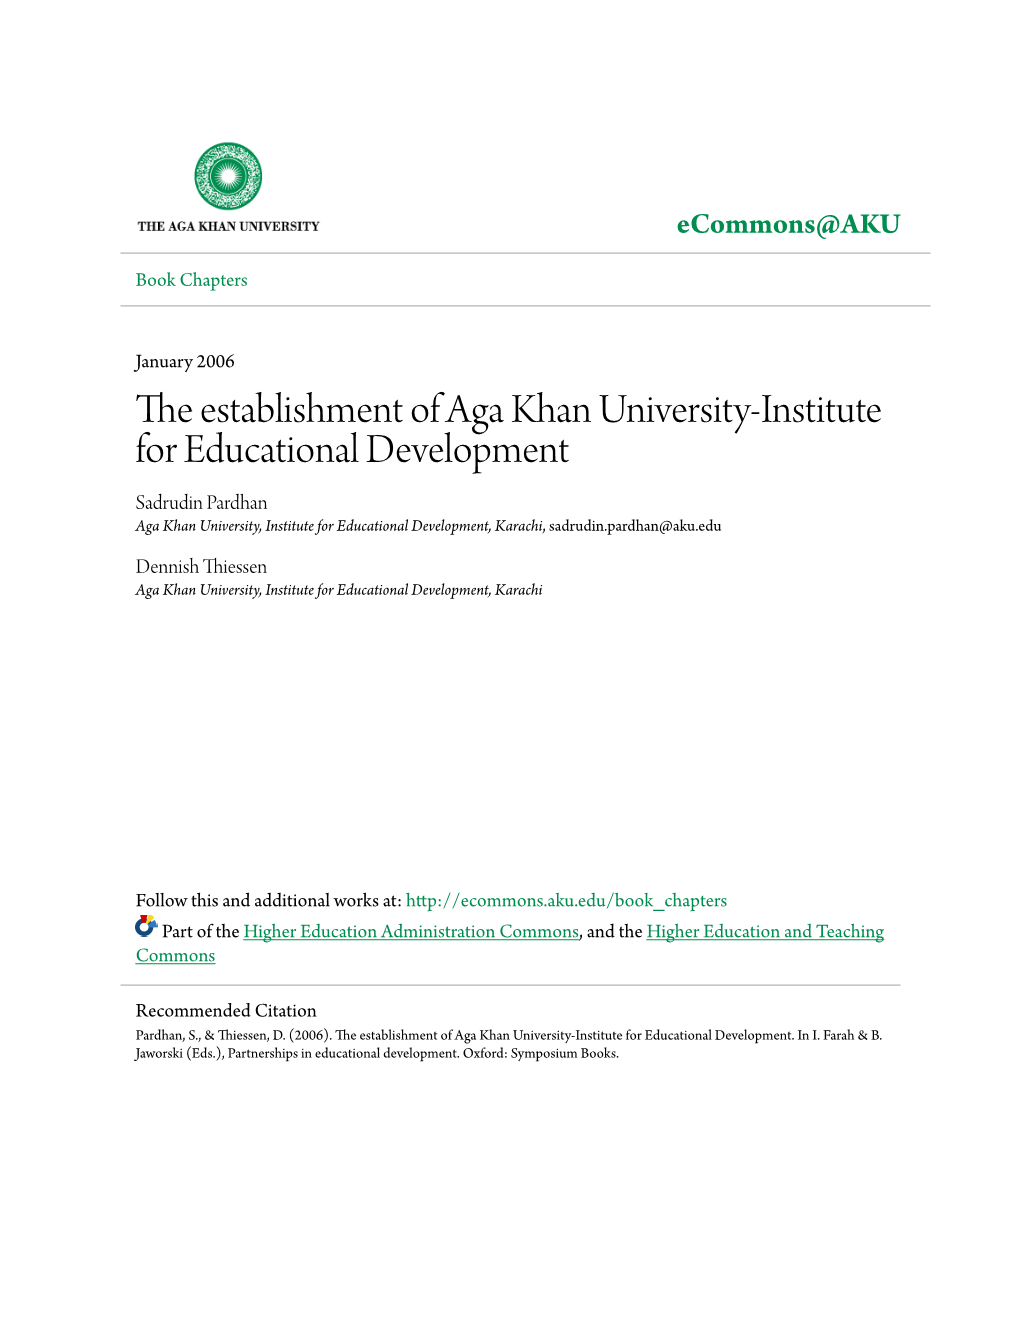 The Establishment of Aga Khan University-Institute for Educational